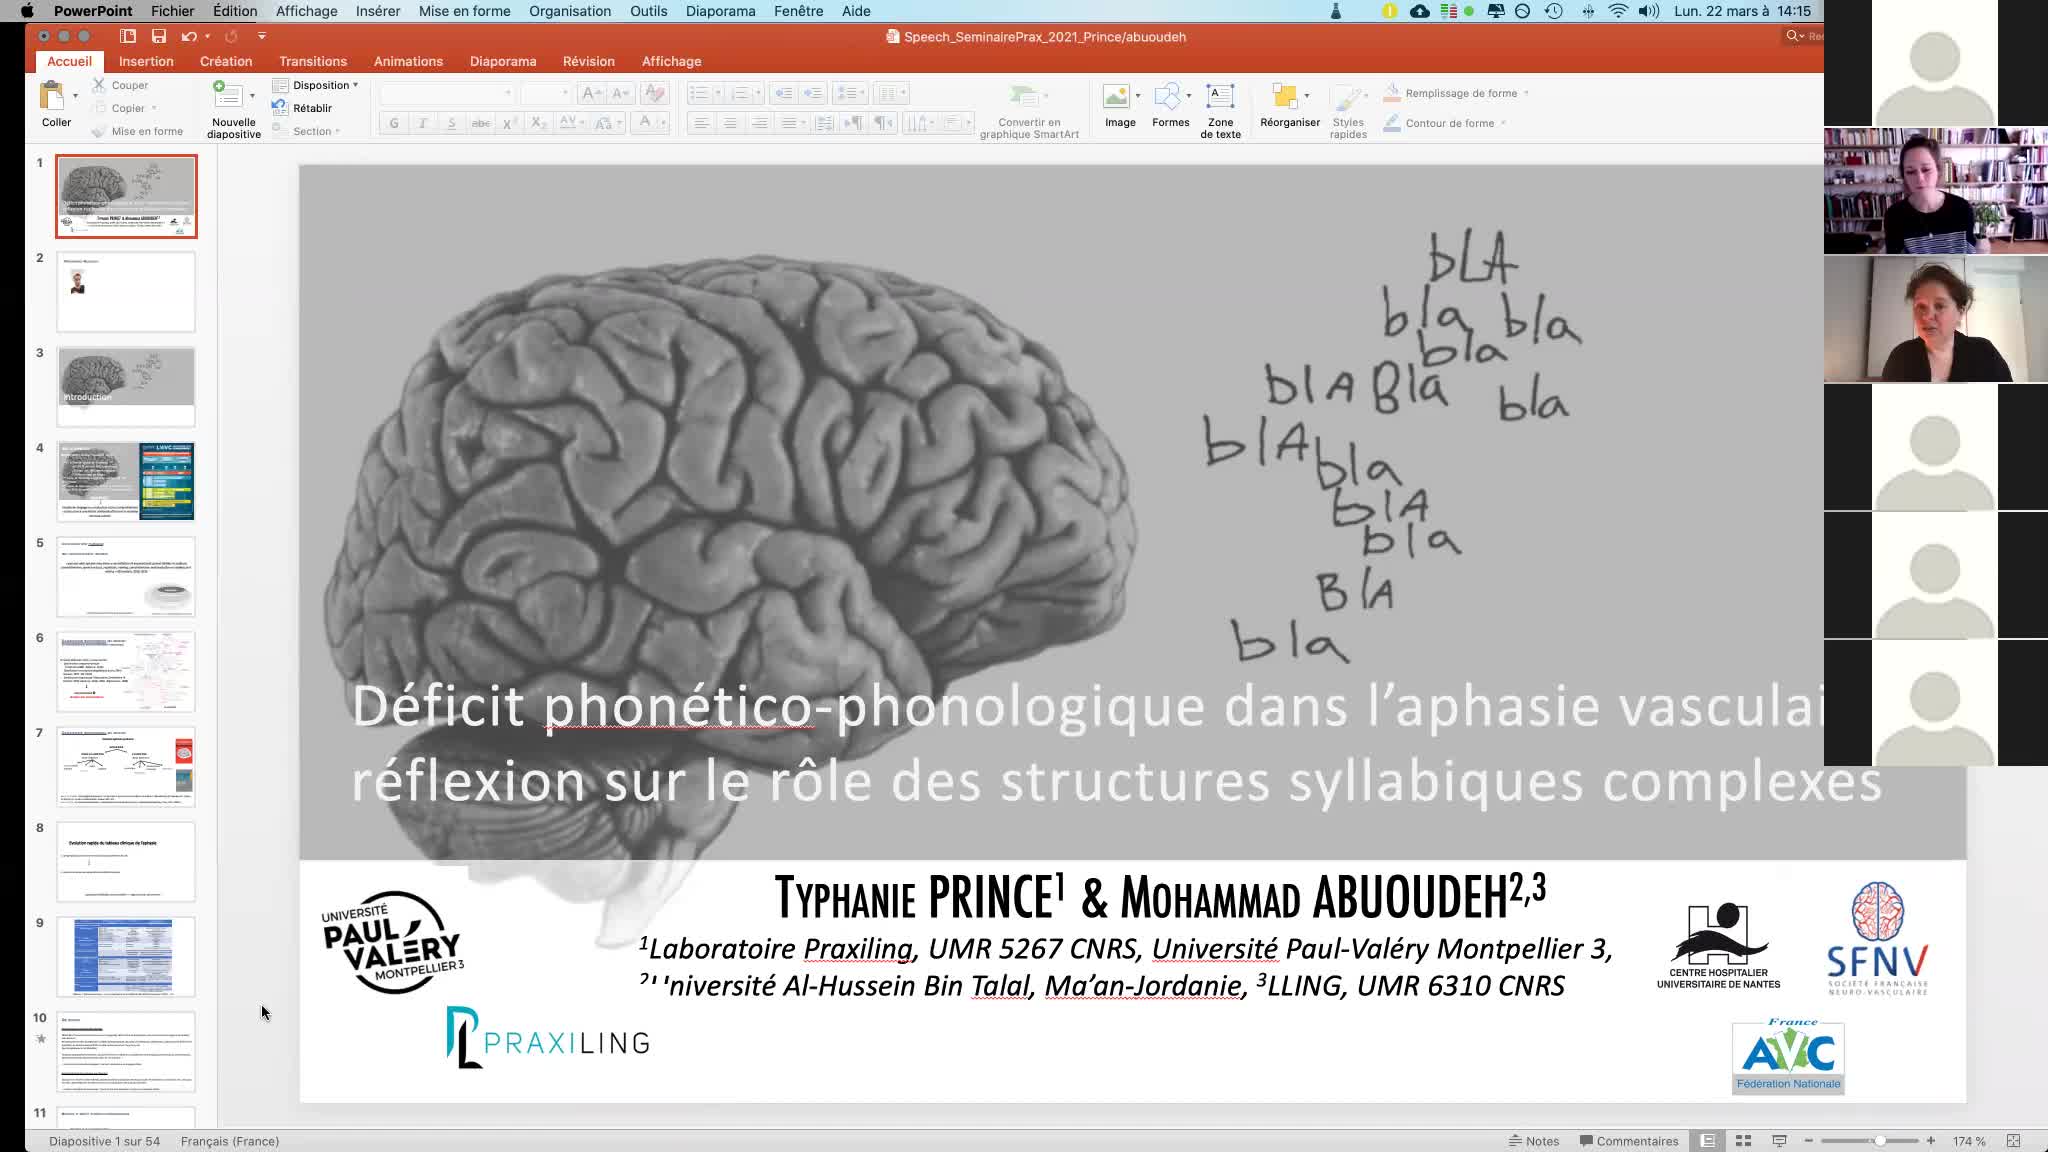 "Déficit phonético-phonologique dans l’aphasie vasculaire : Réflexion sur le rôle des structures syllabiques complexes" par Typhaine Prince